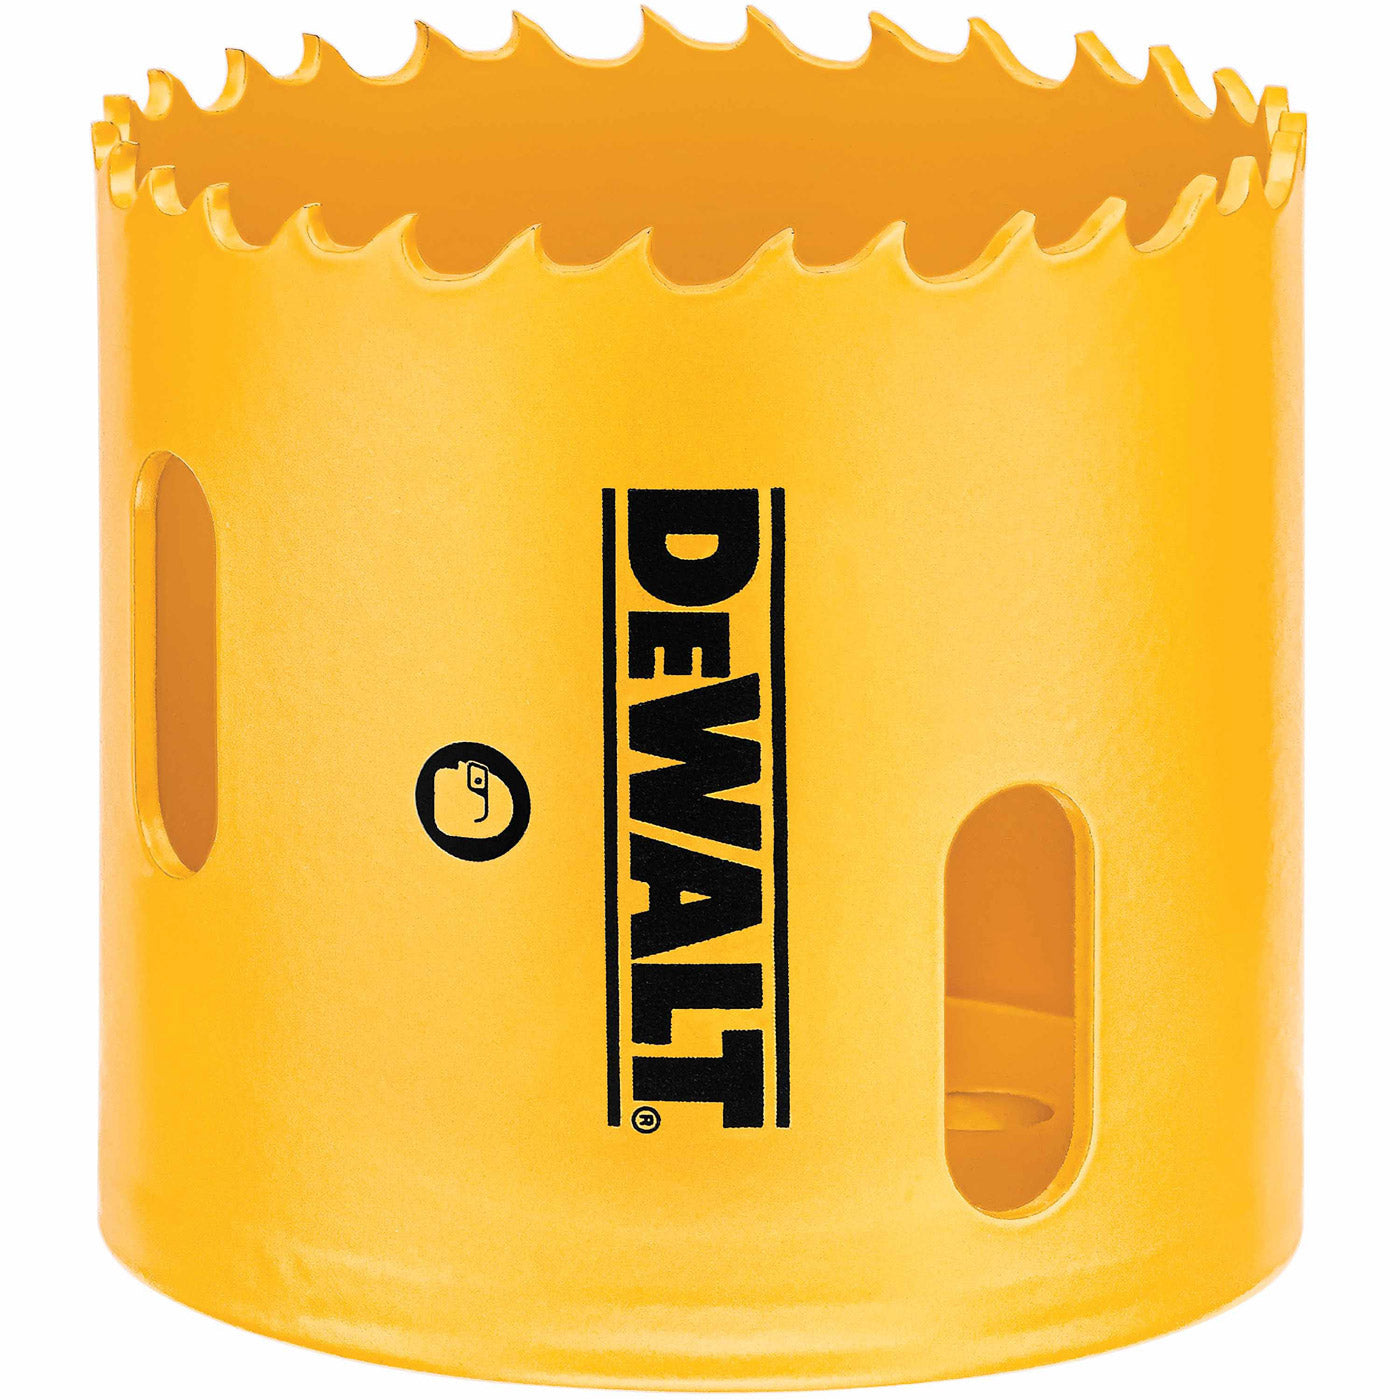 DeWalt D180034 2-1/8" (54mm) Bi-Metal Hole Saw